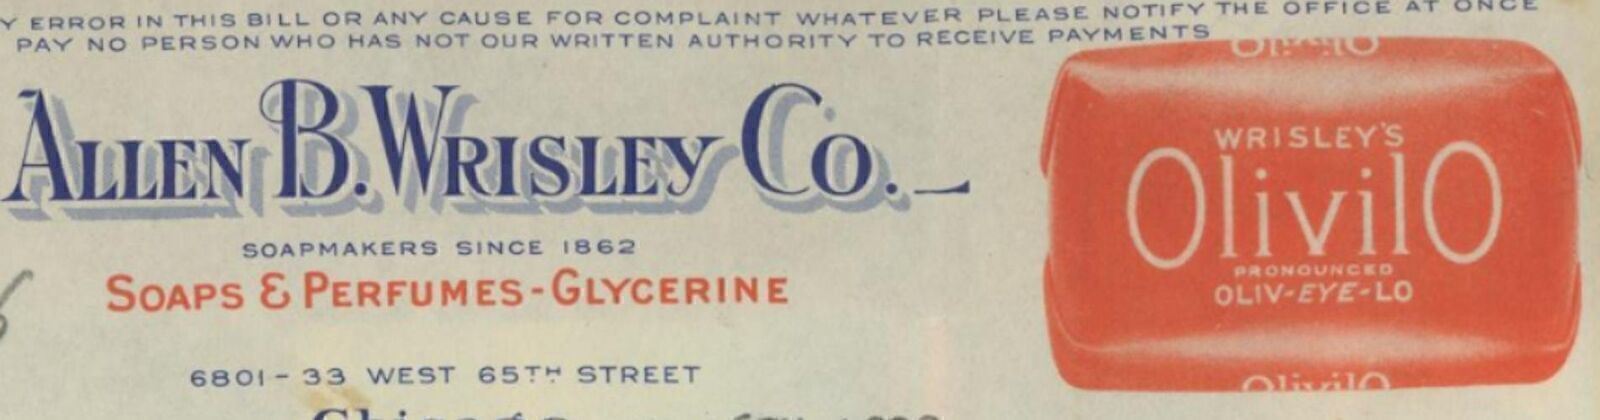 1928 CHICAGO IL ALLEN B WRISLEY CO SOAPS PERFUNES GLYCERINE INVOICE 27-82